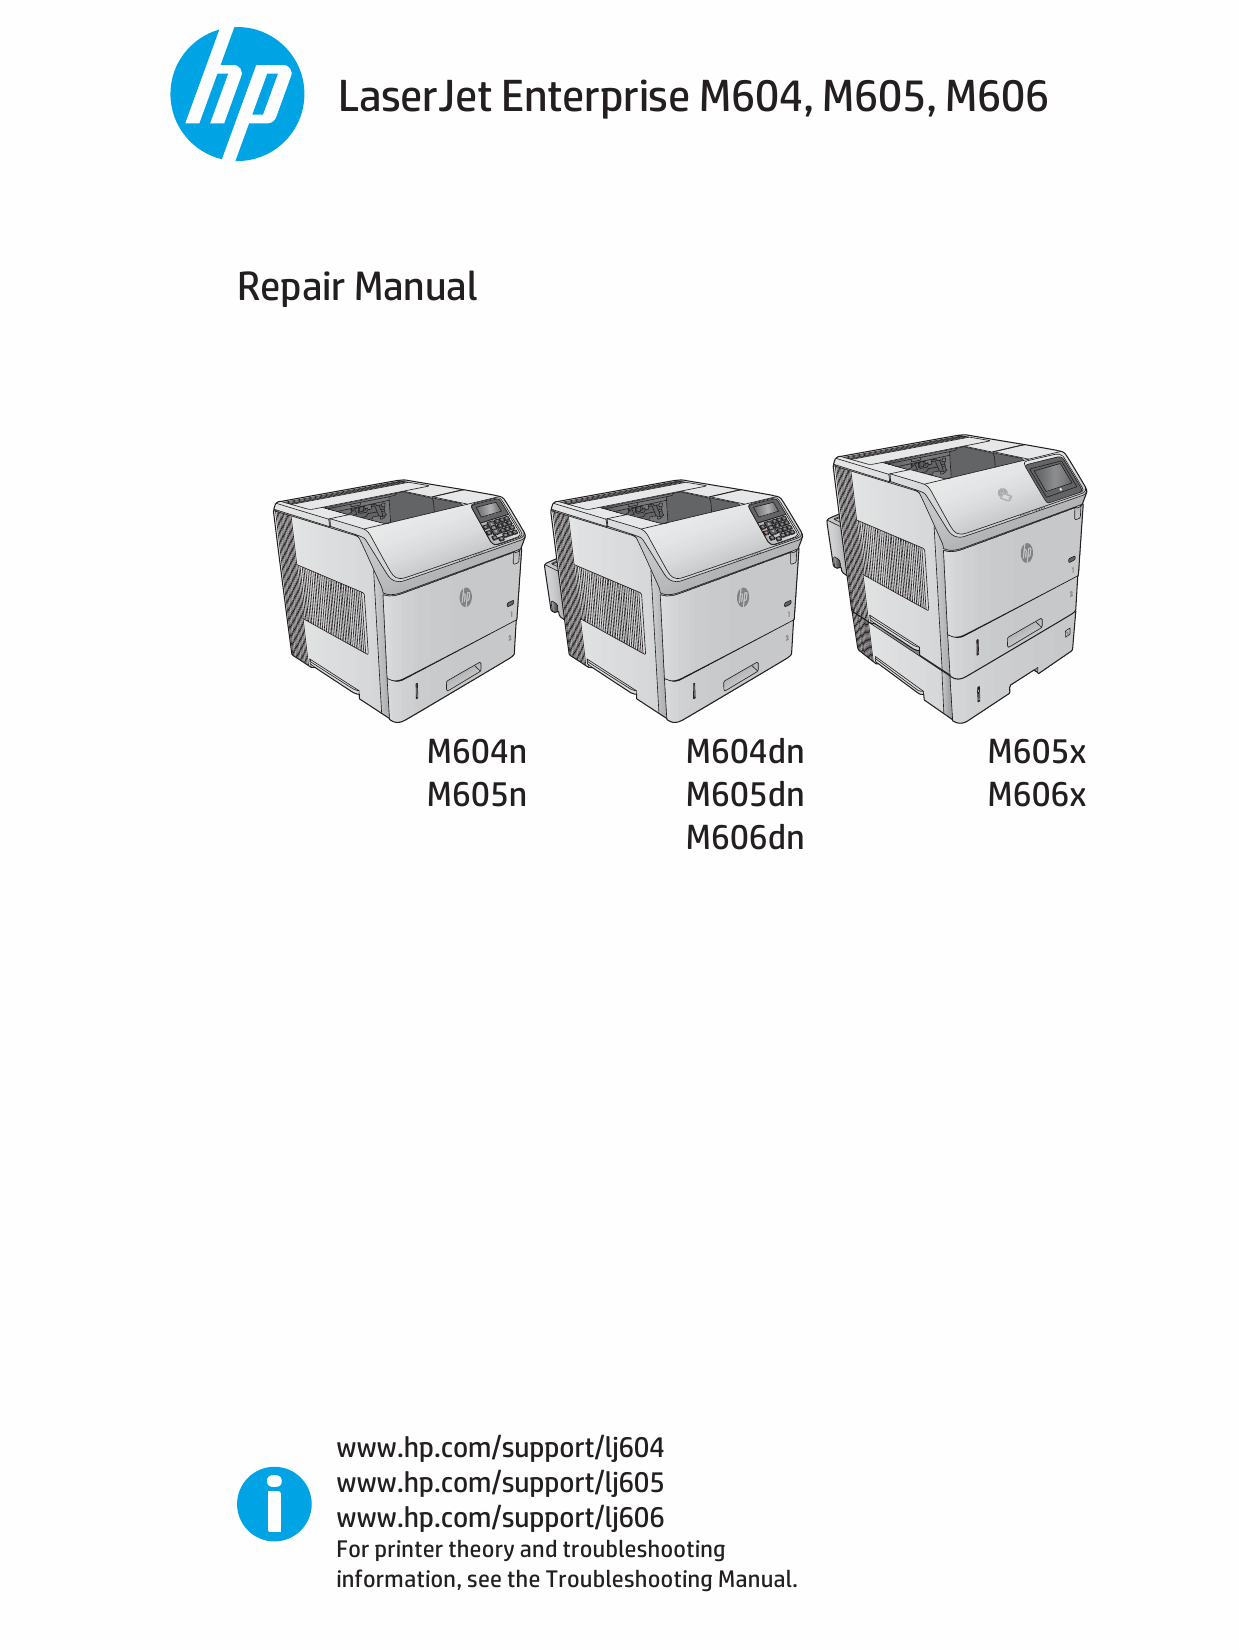 HP LaserJet Enterprise M604 M605 M606 Parts and Repair Manual PDF download-1